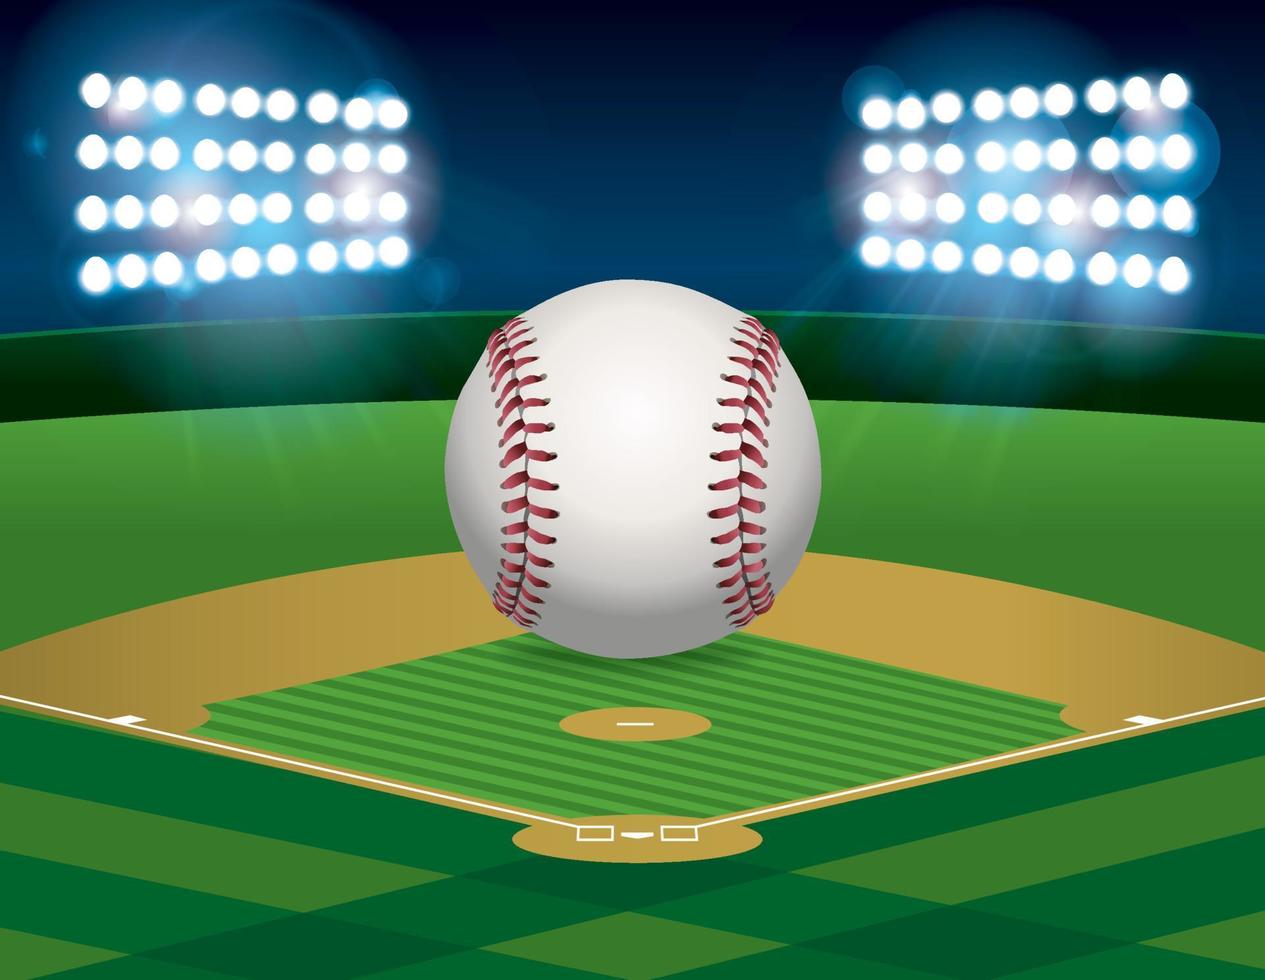 beisebol na ilustração do campo de beisebol vetor